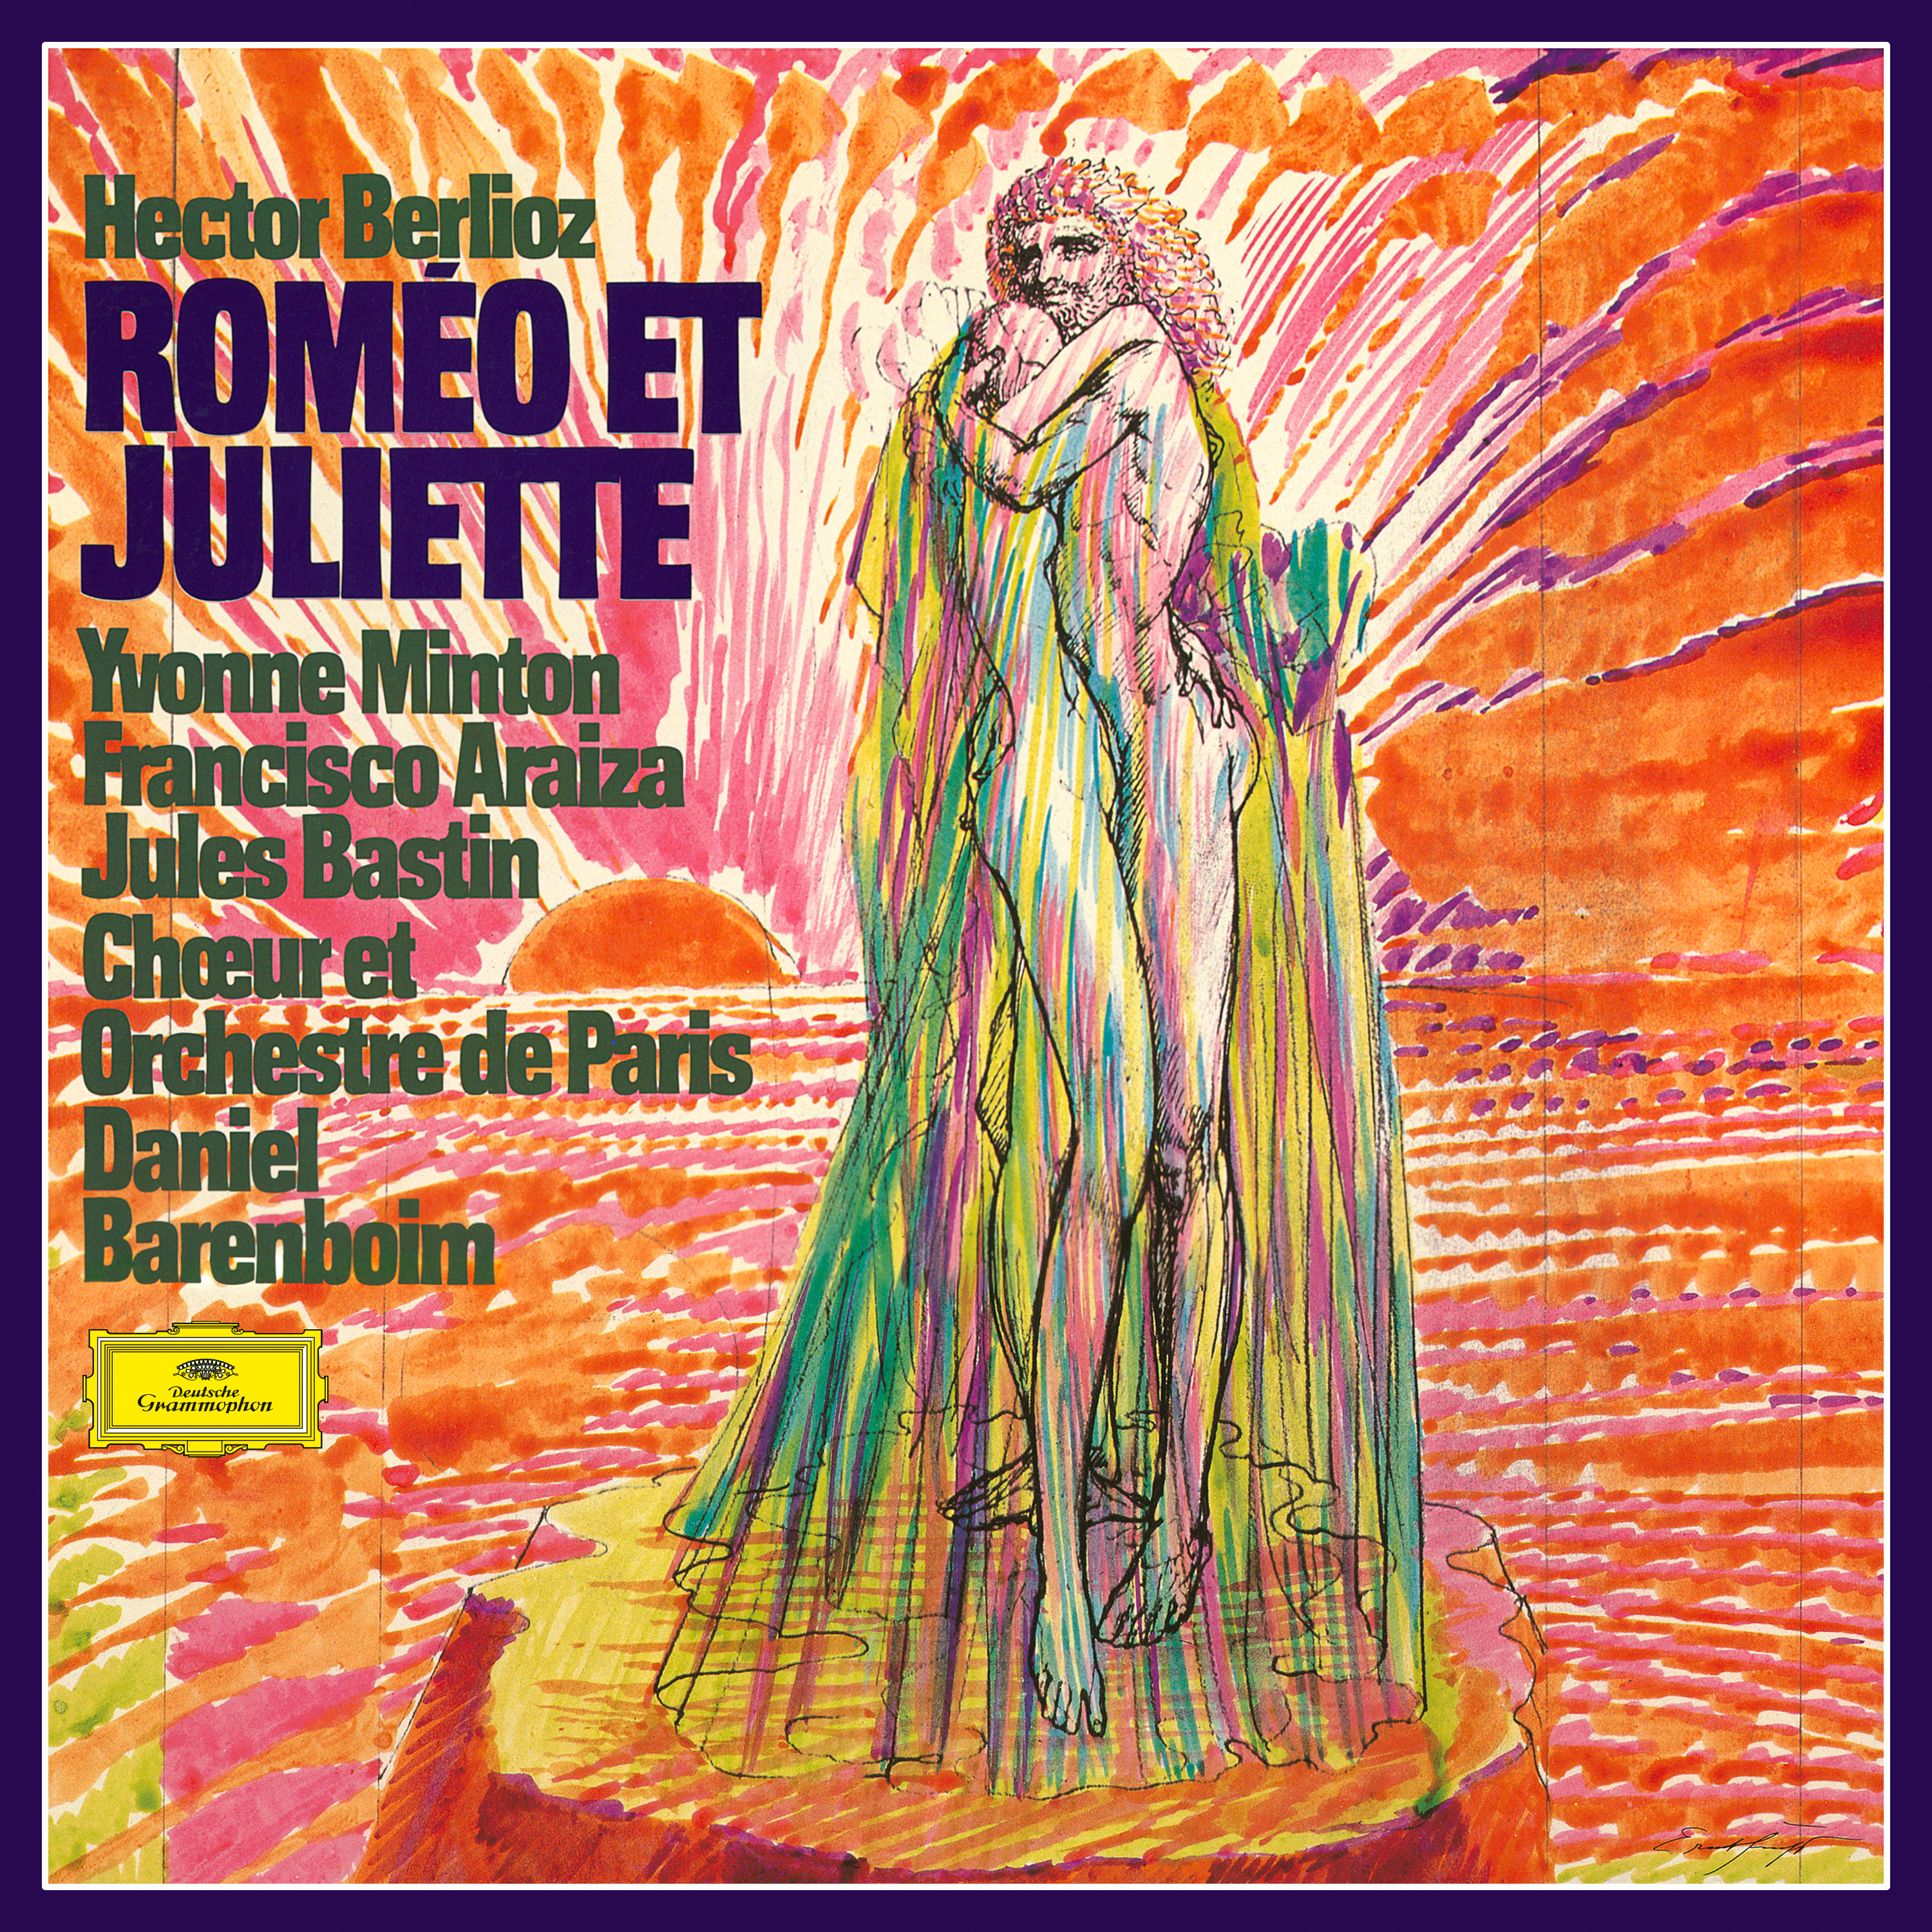 Rome o et Juliette, Op. 17  Part 2: Rome o seul  Tristesse  Concert et bal.